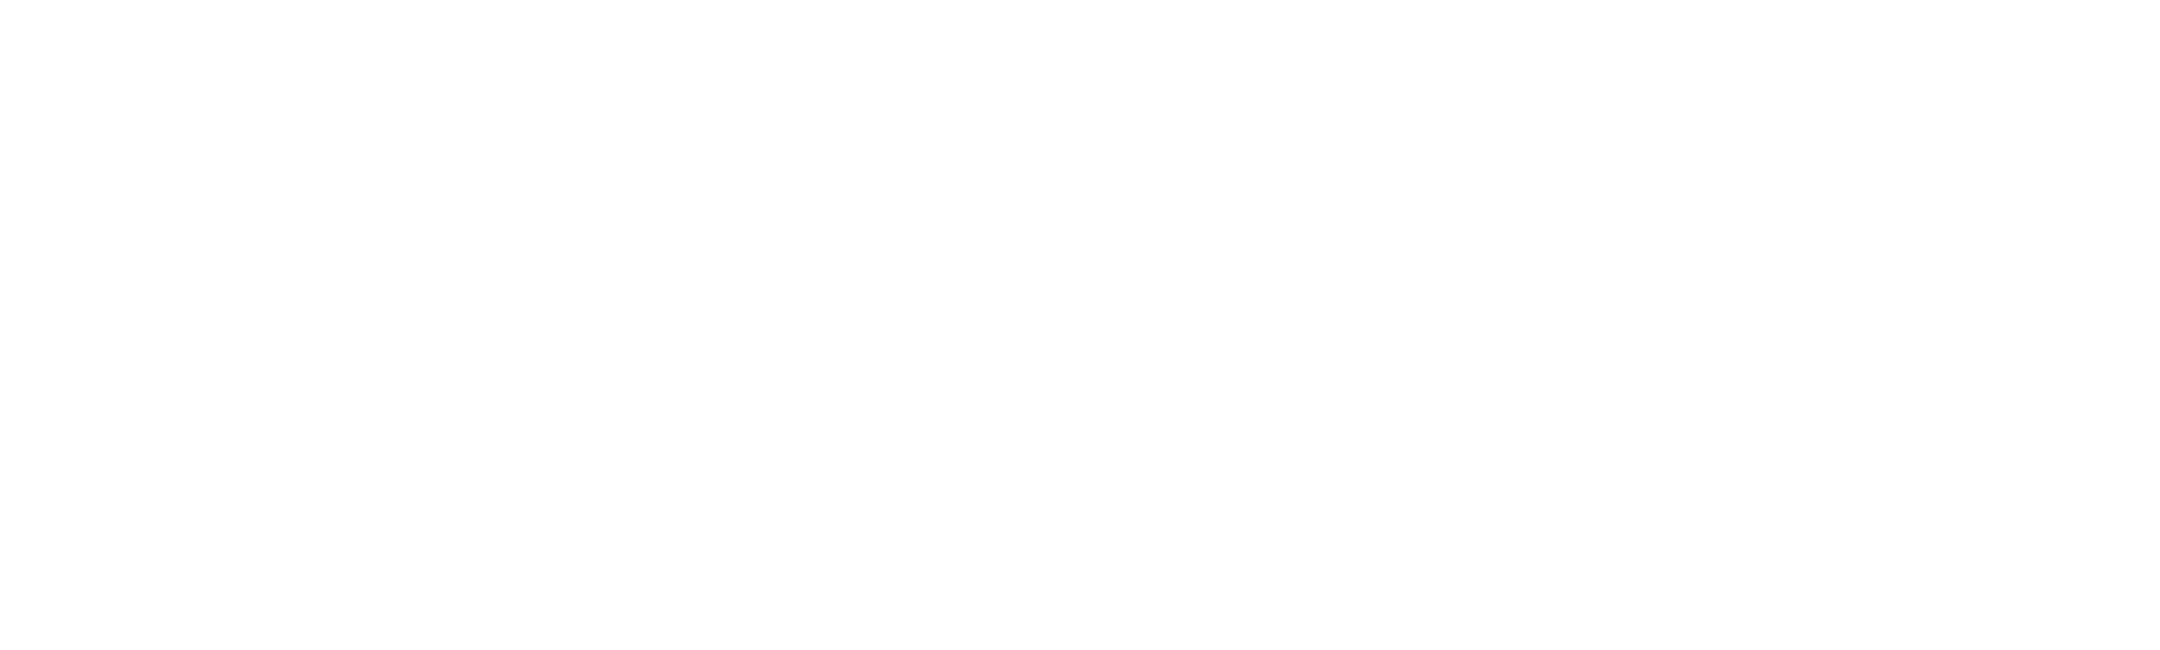 ระบบการชำระเงิน สกุลเงินดิจิทัล - FSFPAY.com